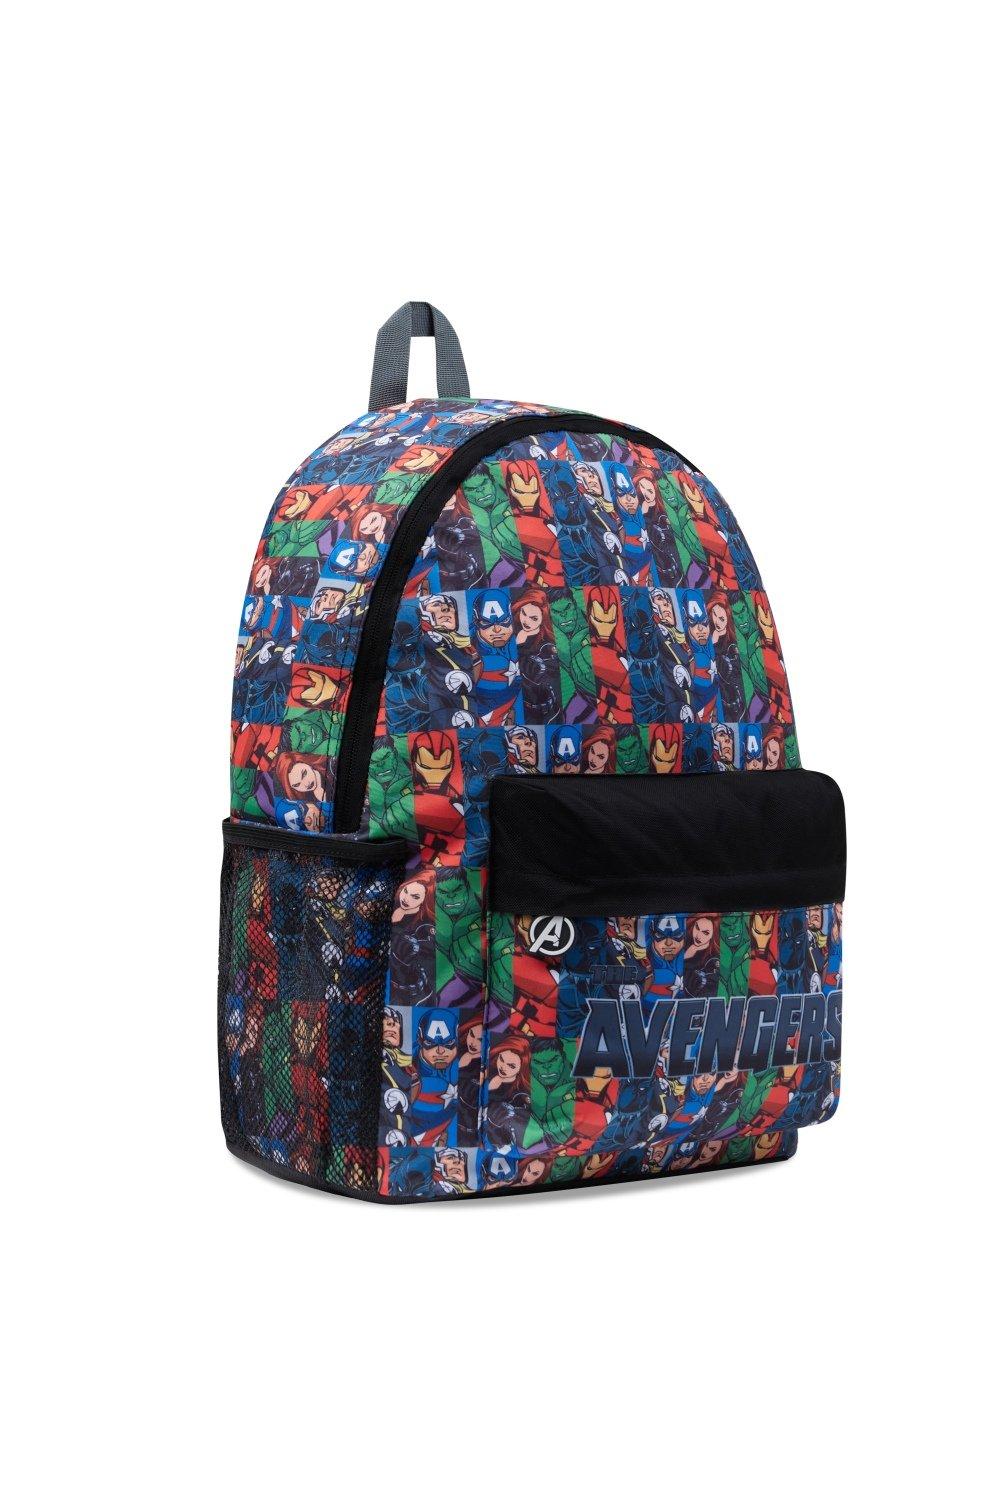 Рюкзак Мстителей большой вместимости Marvel, мультиколор детский рюкзак в kidergarten милый школьный рюкзак для мальчиков и девочек школьные сумки с мультипликационным рисунком детский подарок школь